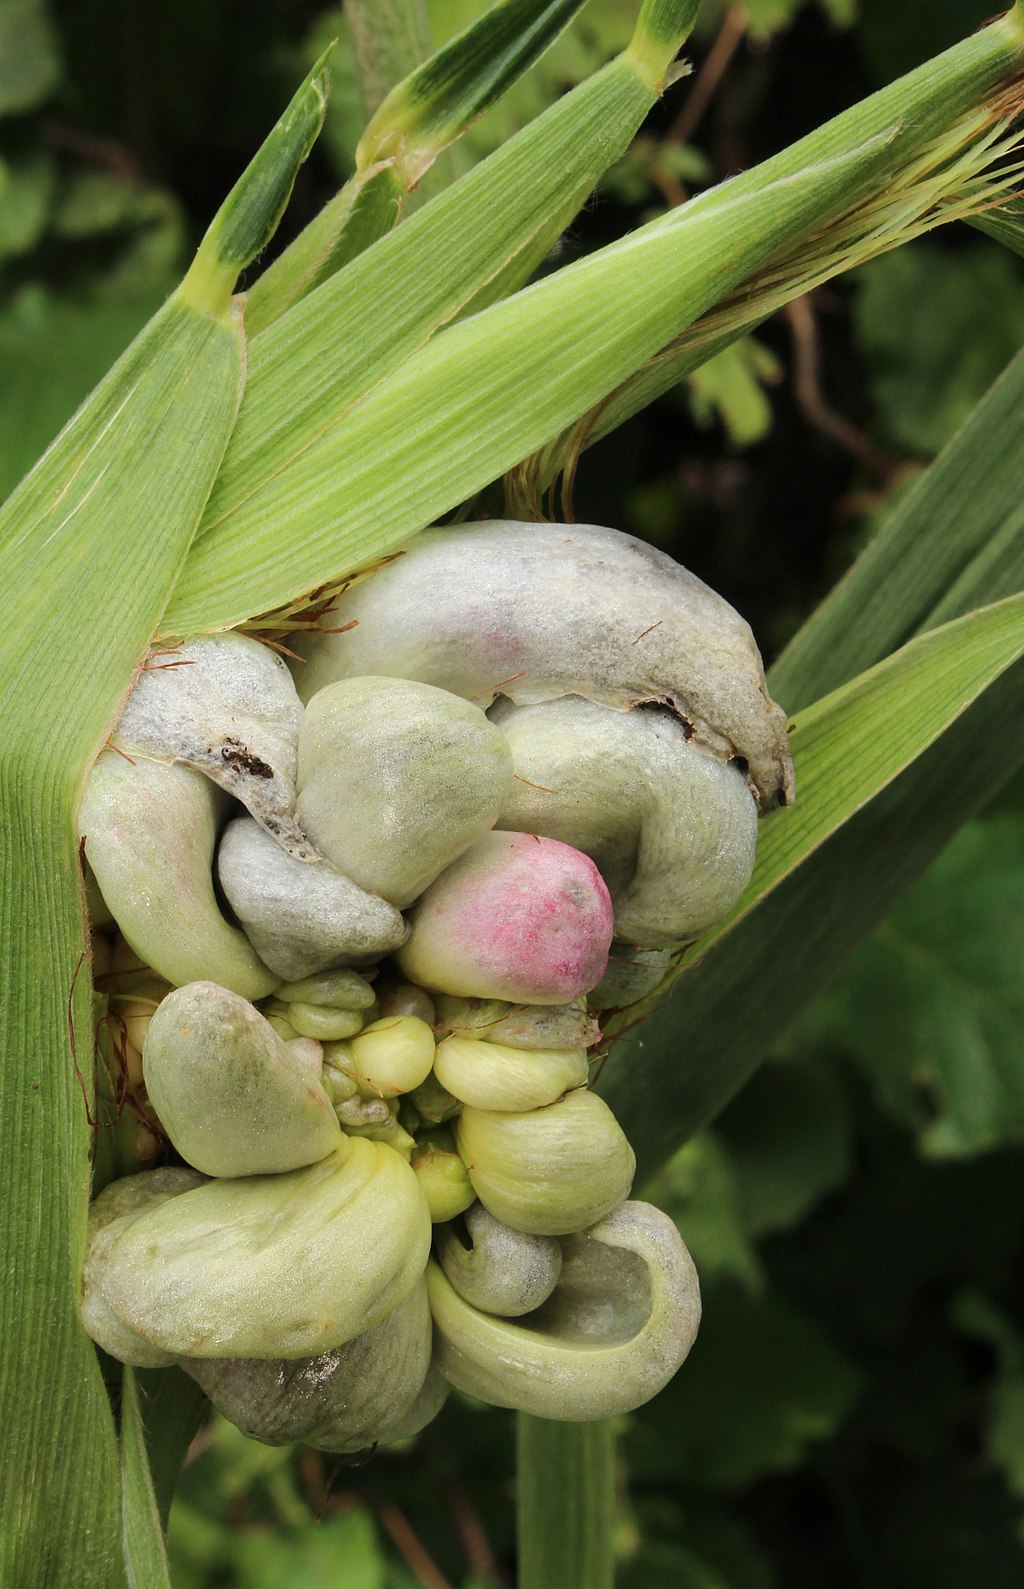 Un revoltijo caótico de estructuras hinchadas de color gris y rosa que emergen de una mazorca de maíz